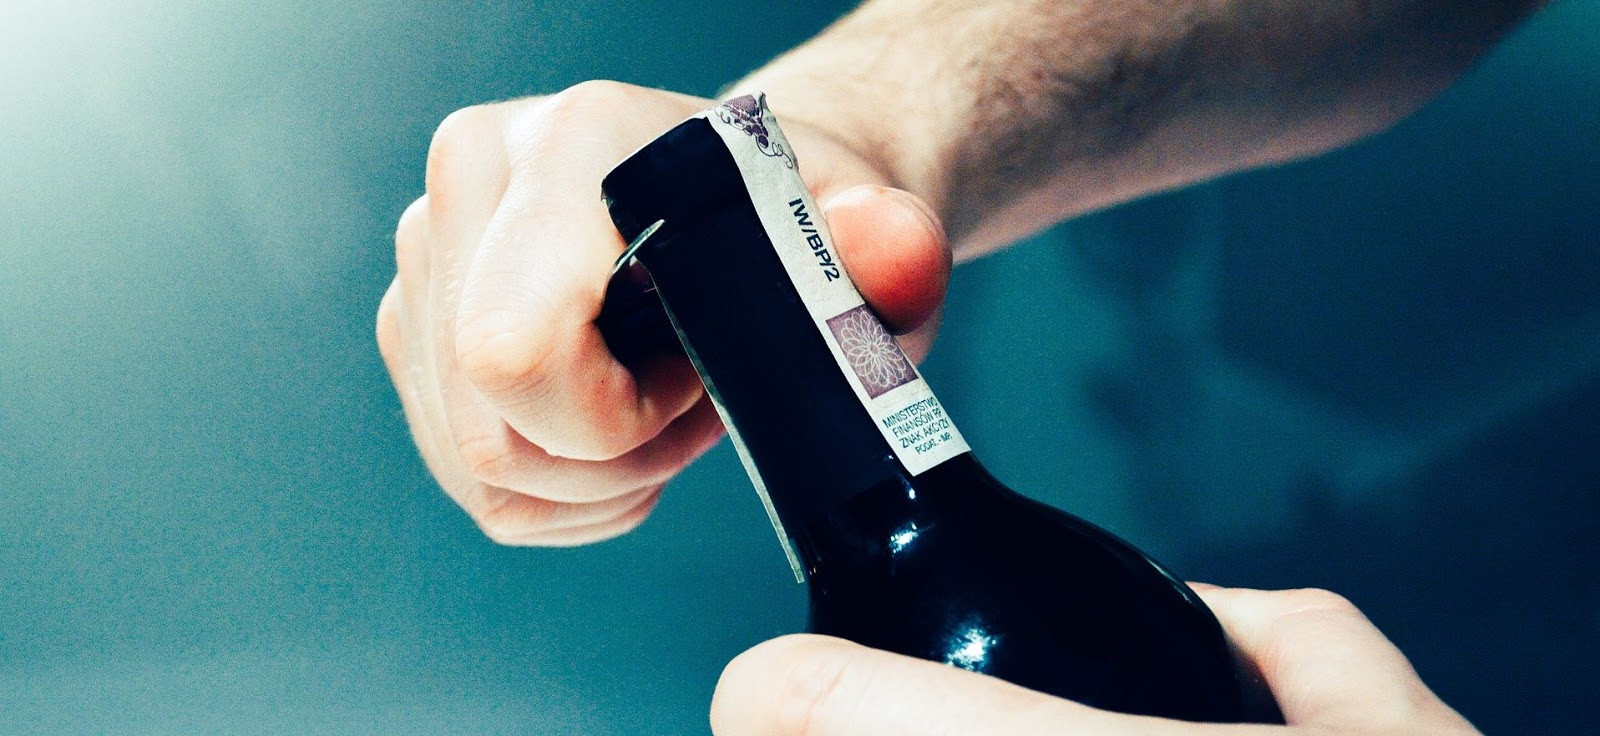 Dobré vedieť: Ako dlho môže zostať fľaša vína otvorená?